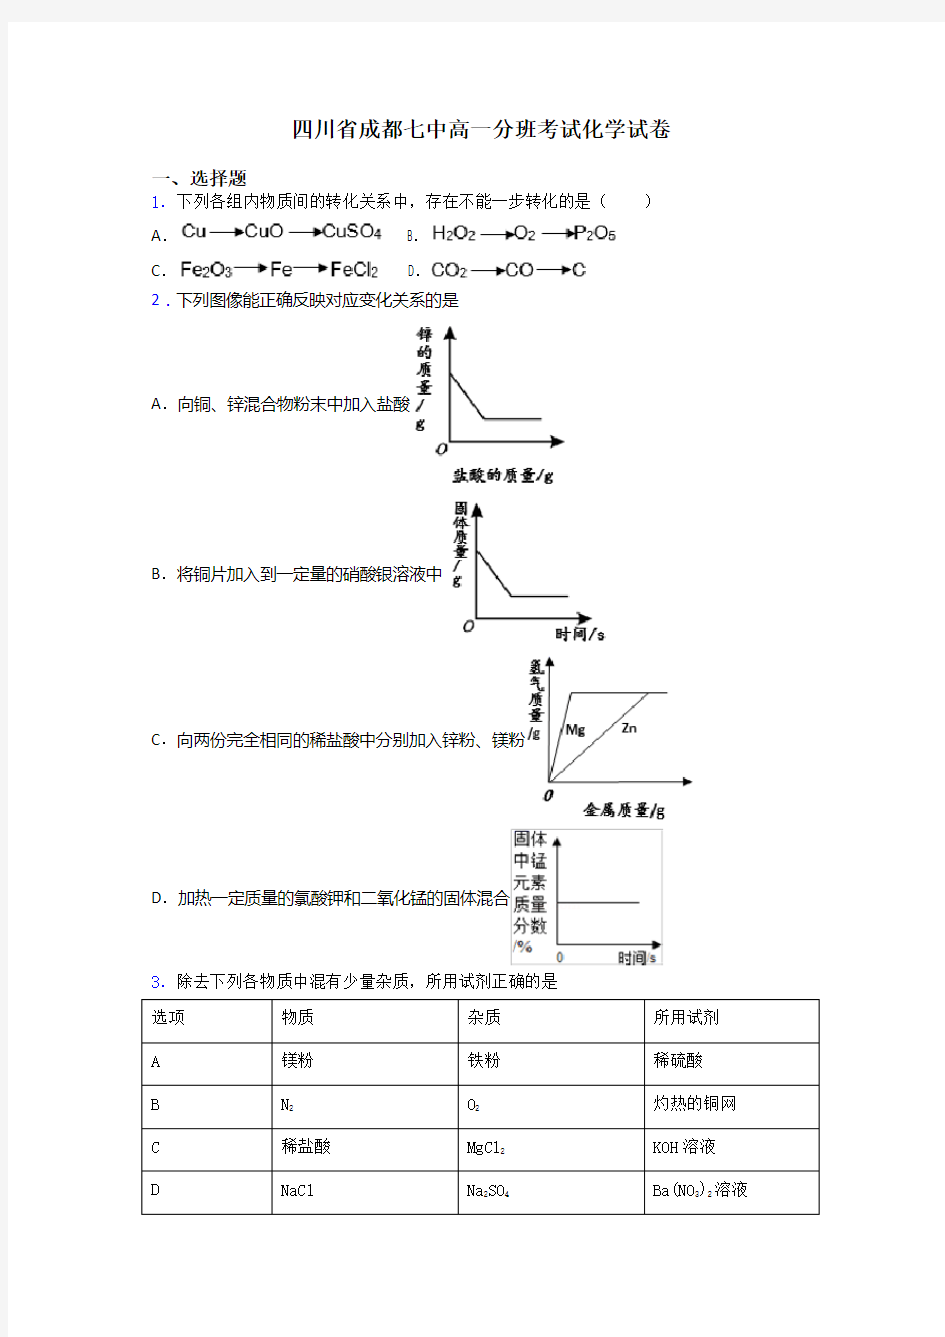 四川省成都七中高一分班考试化学试卷